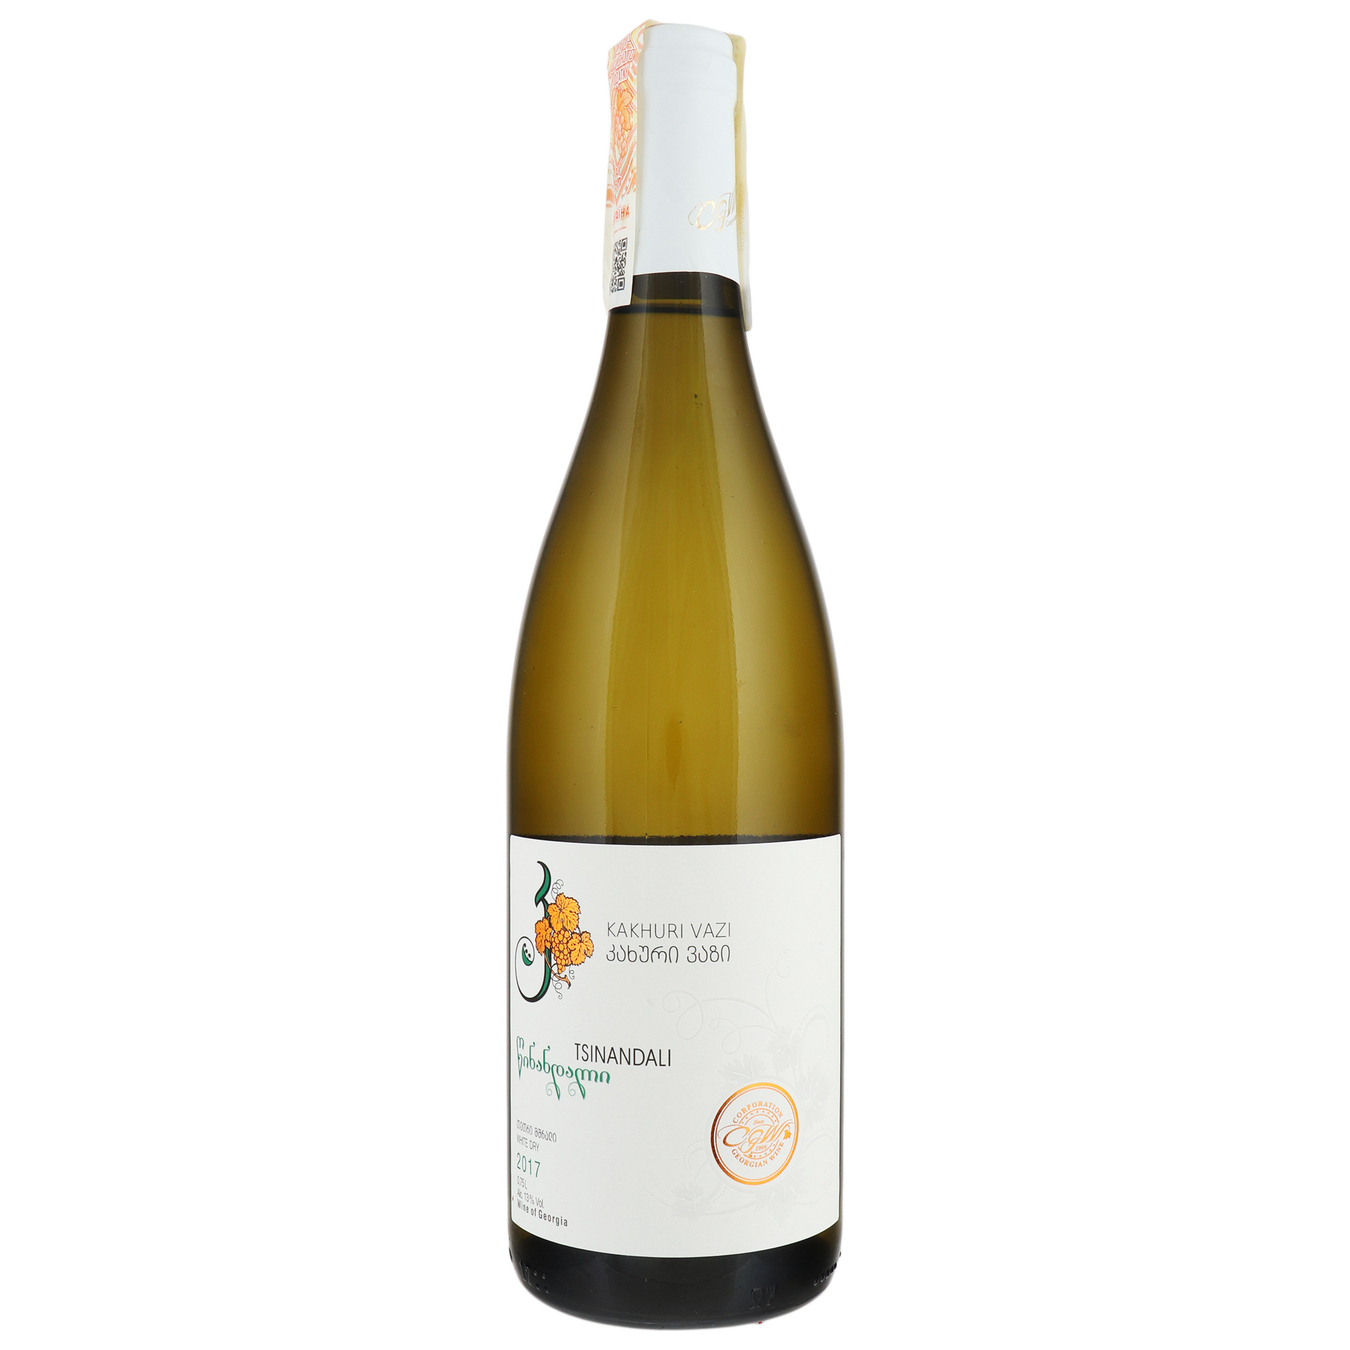 Wine Kakhuri Vazi Tsinandali white dry 13% 0,75l